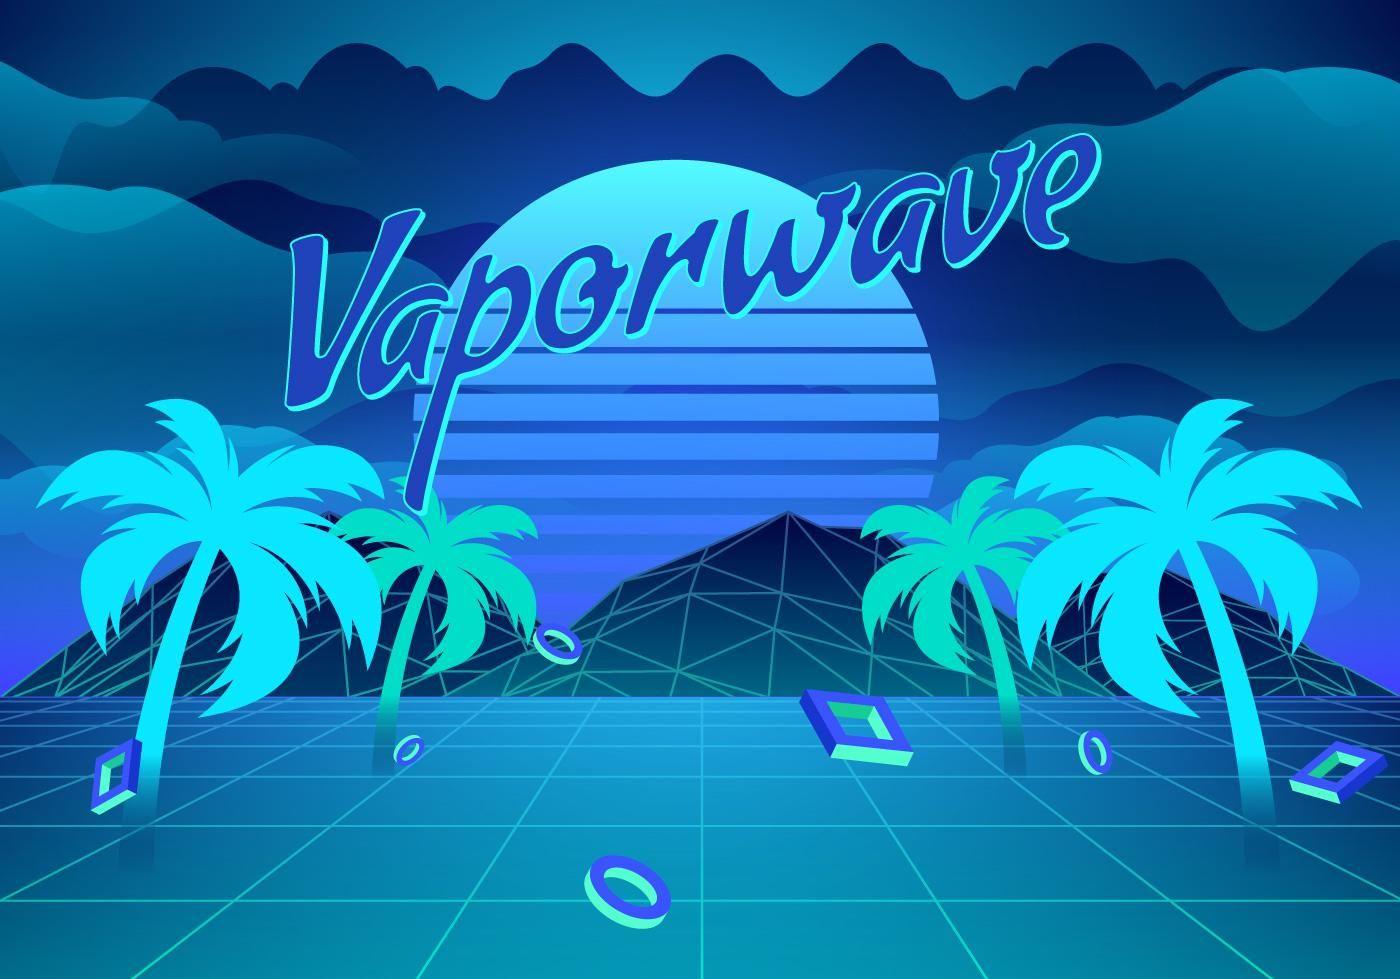 Vaporwave Background Illustration Vector